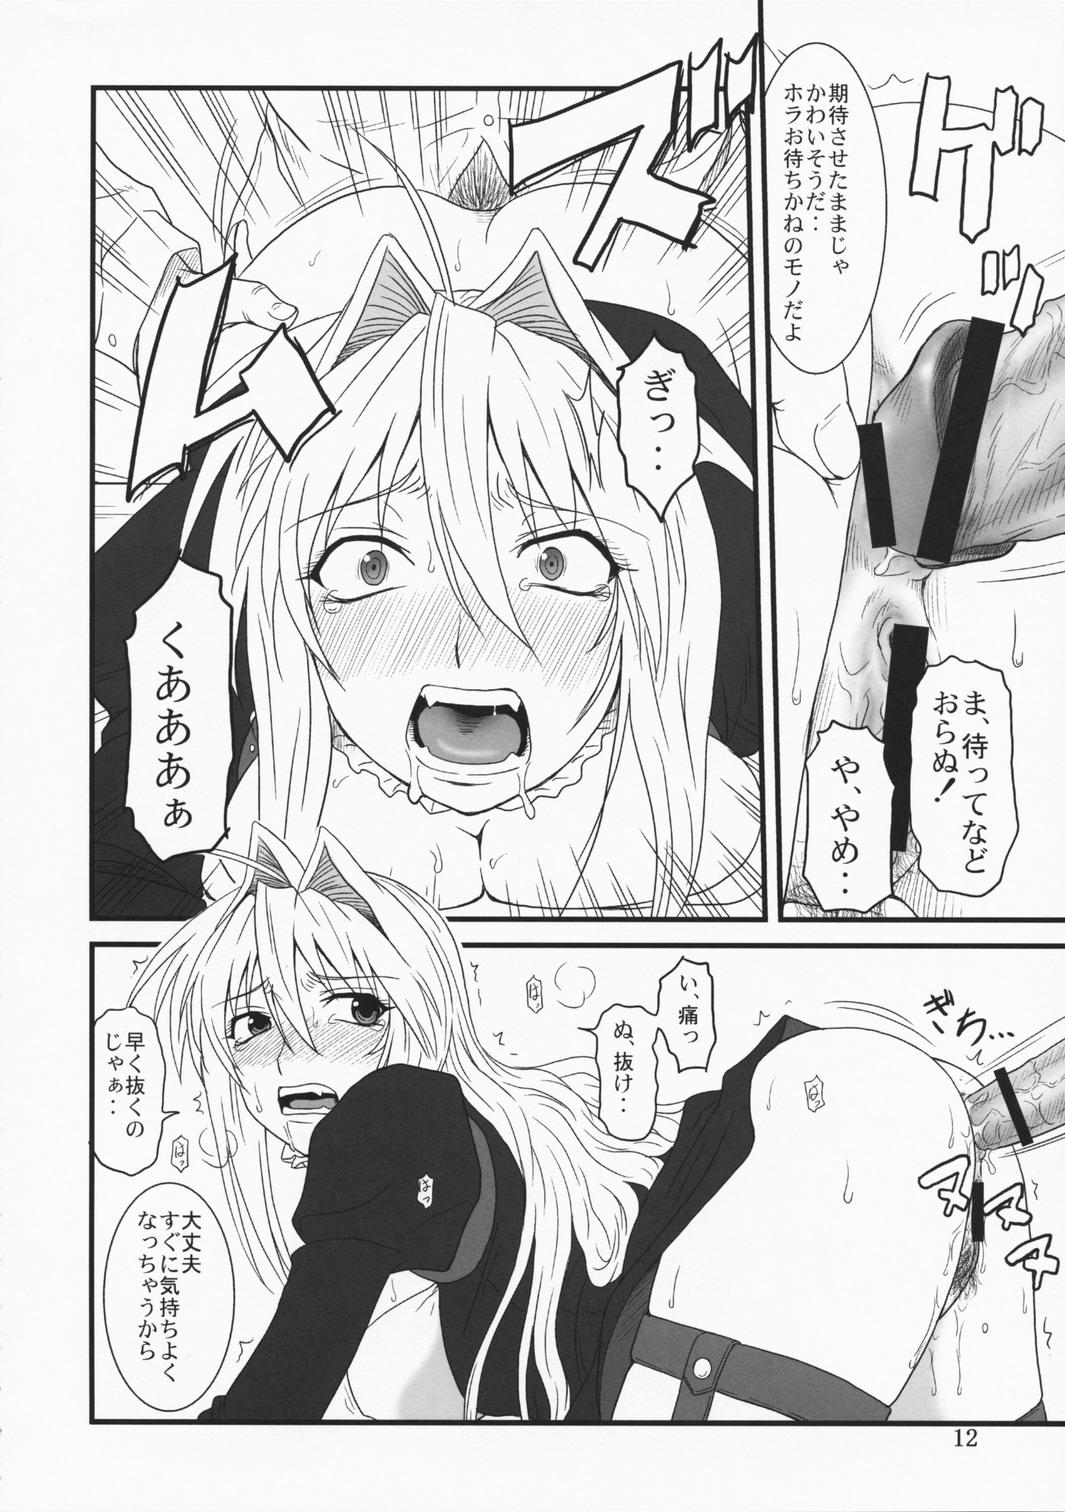 Licking Ochita Sekirei - Sekirei Gays - Page 11